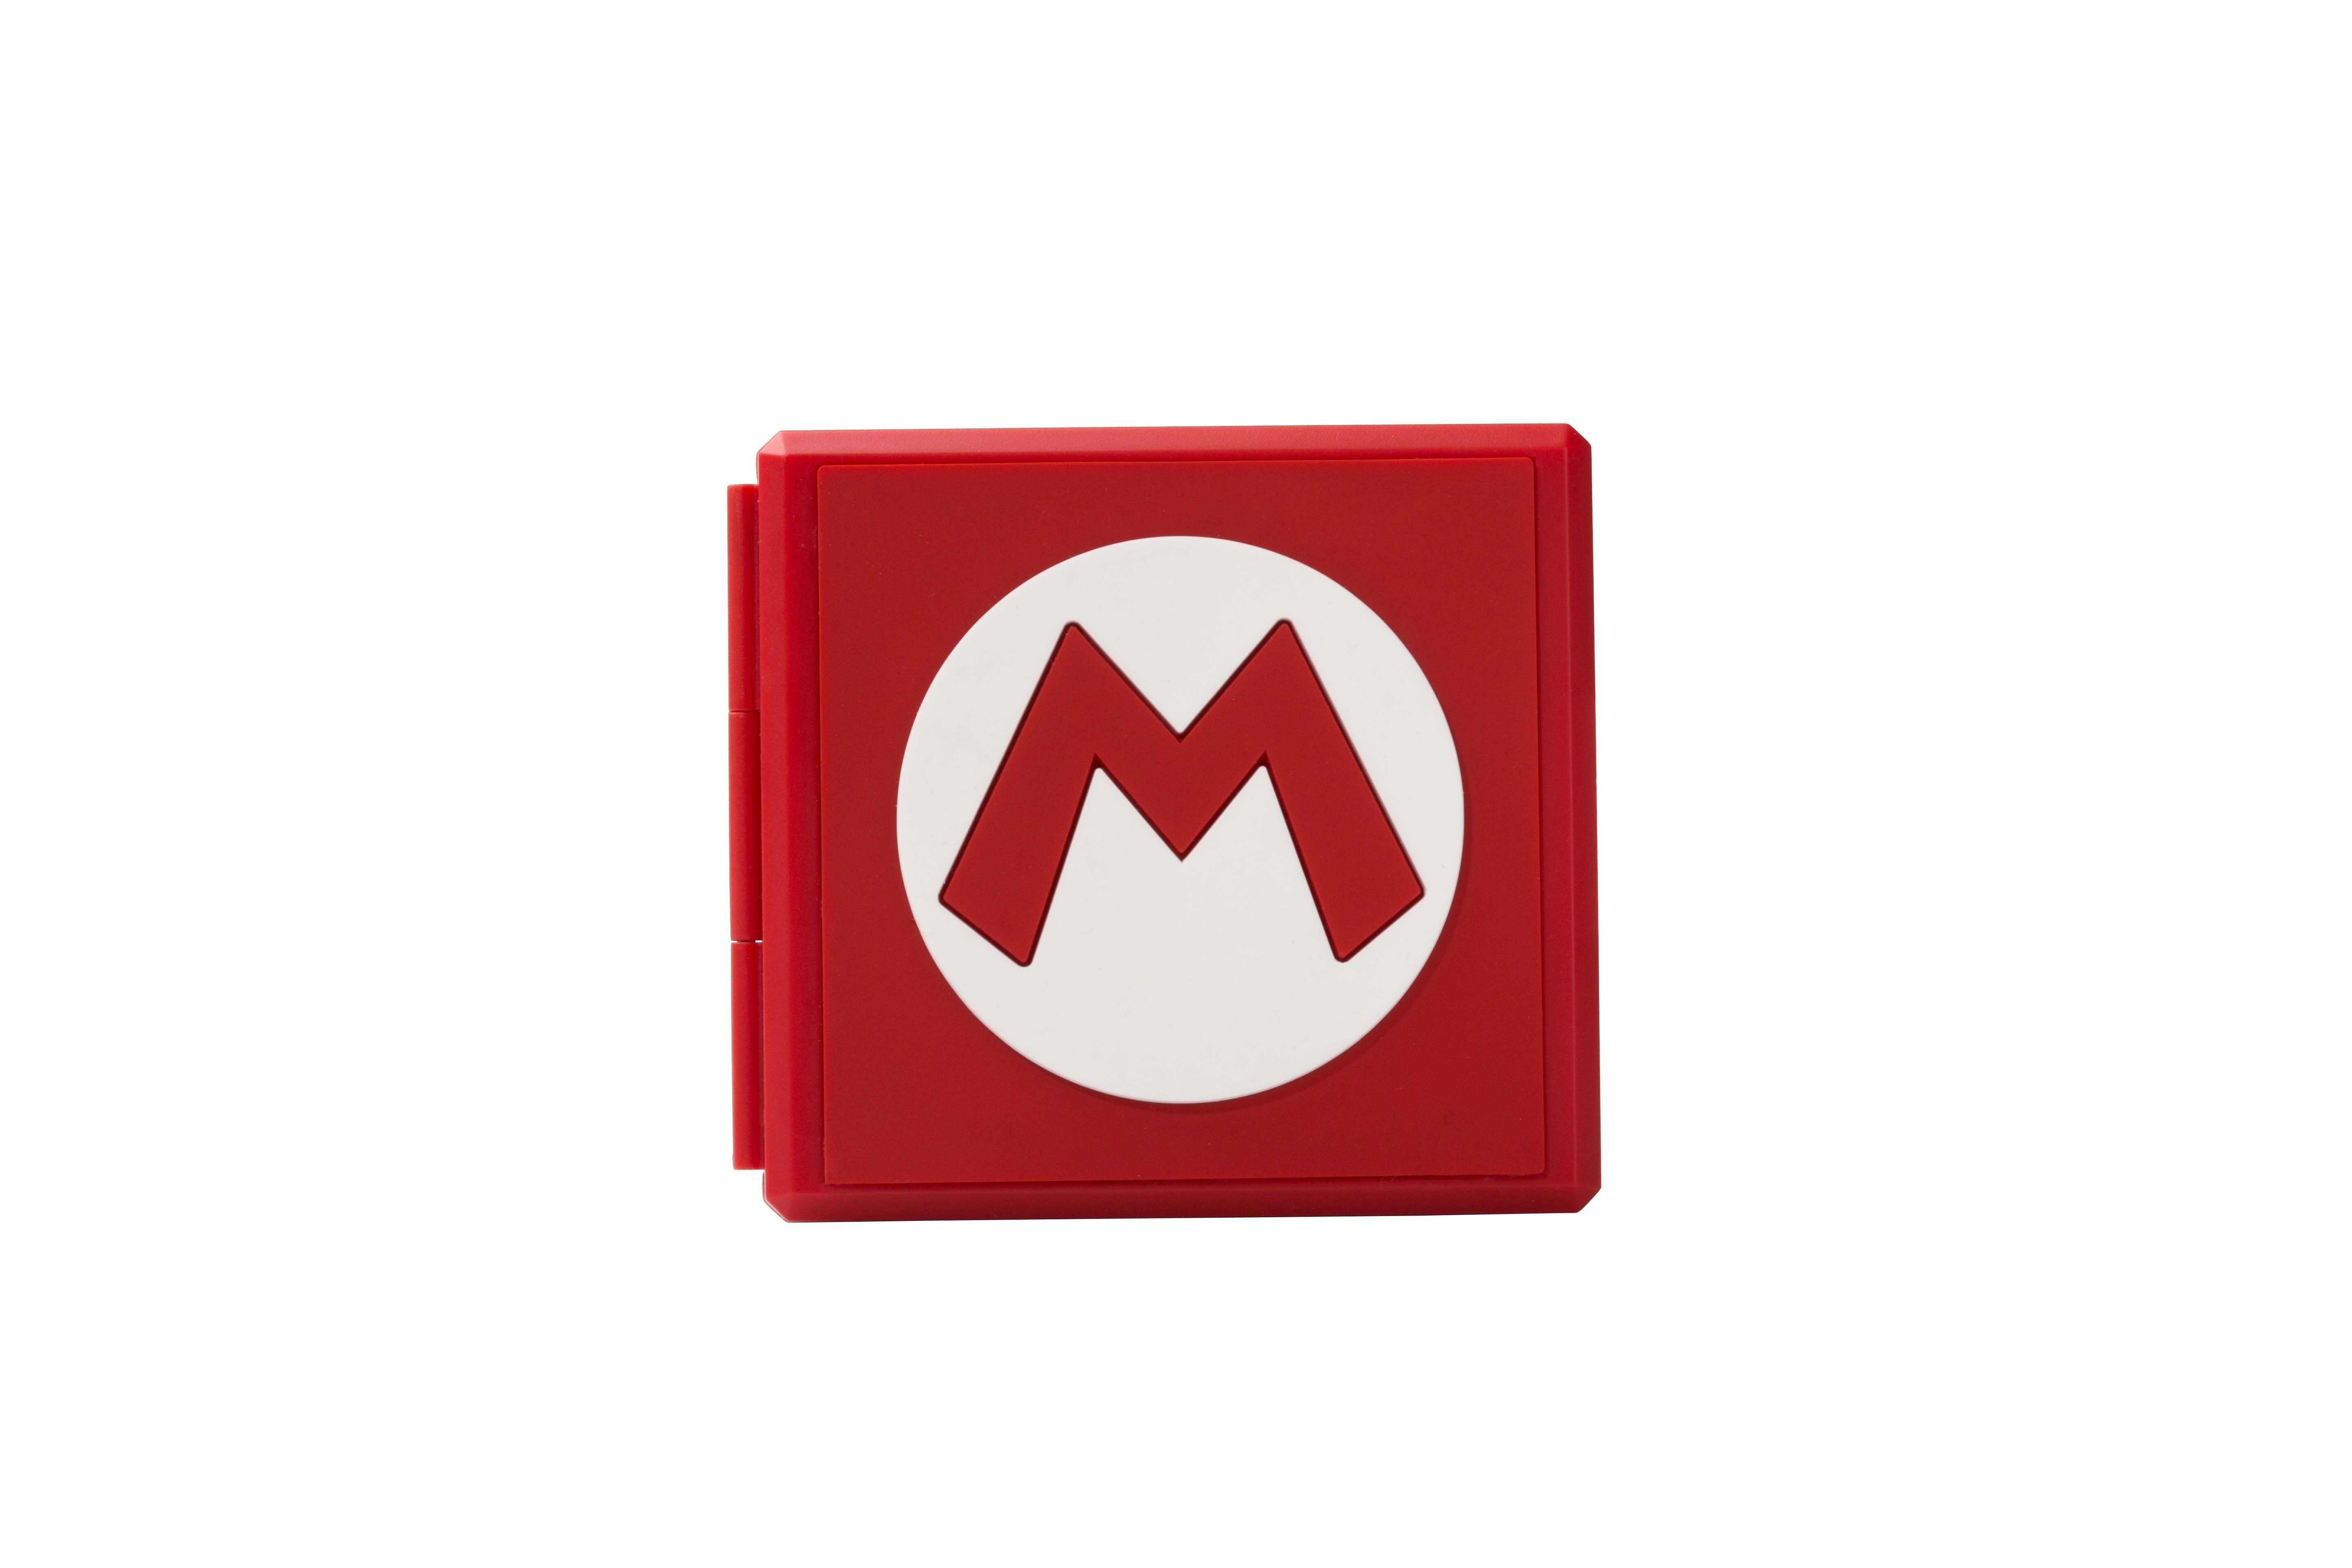 PowerA Premium Game Card Case for Nintendo Switch Super Mario